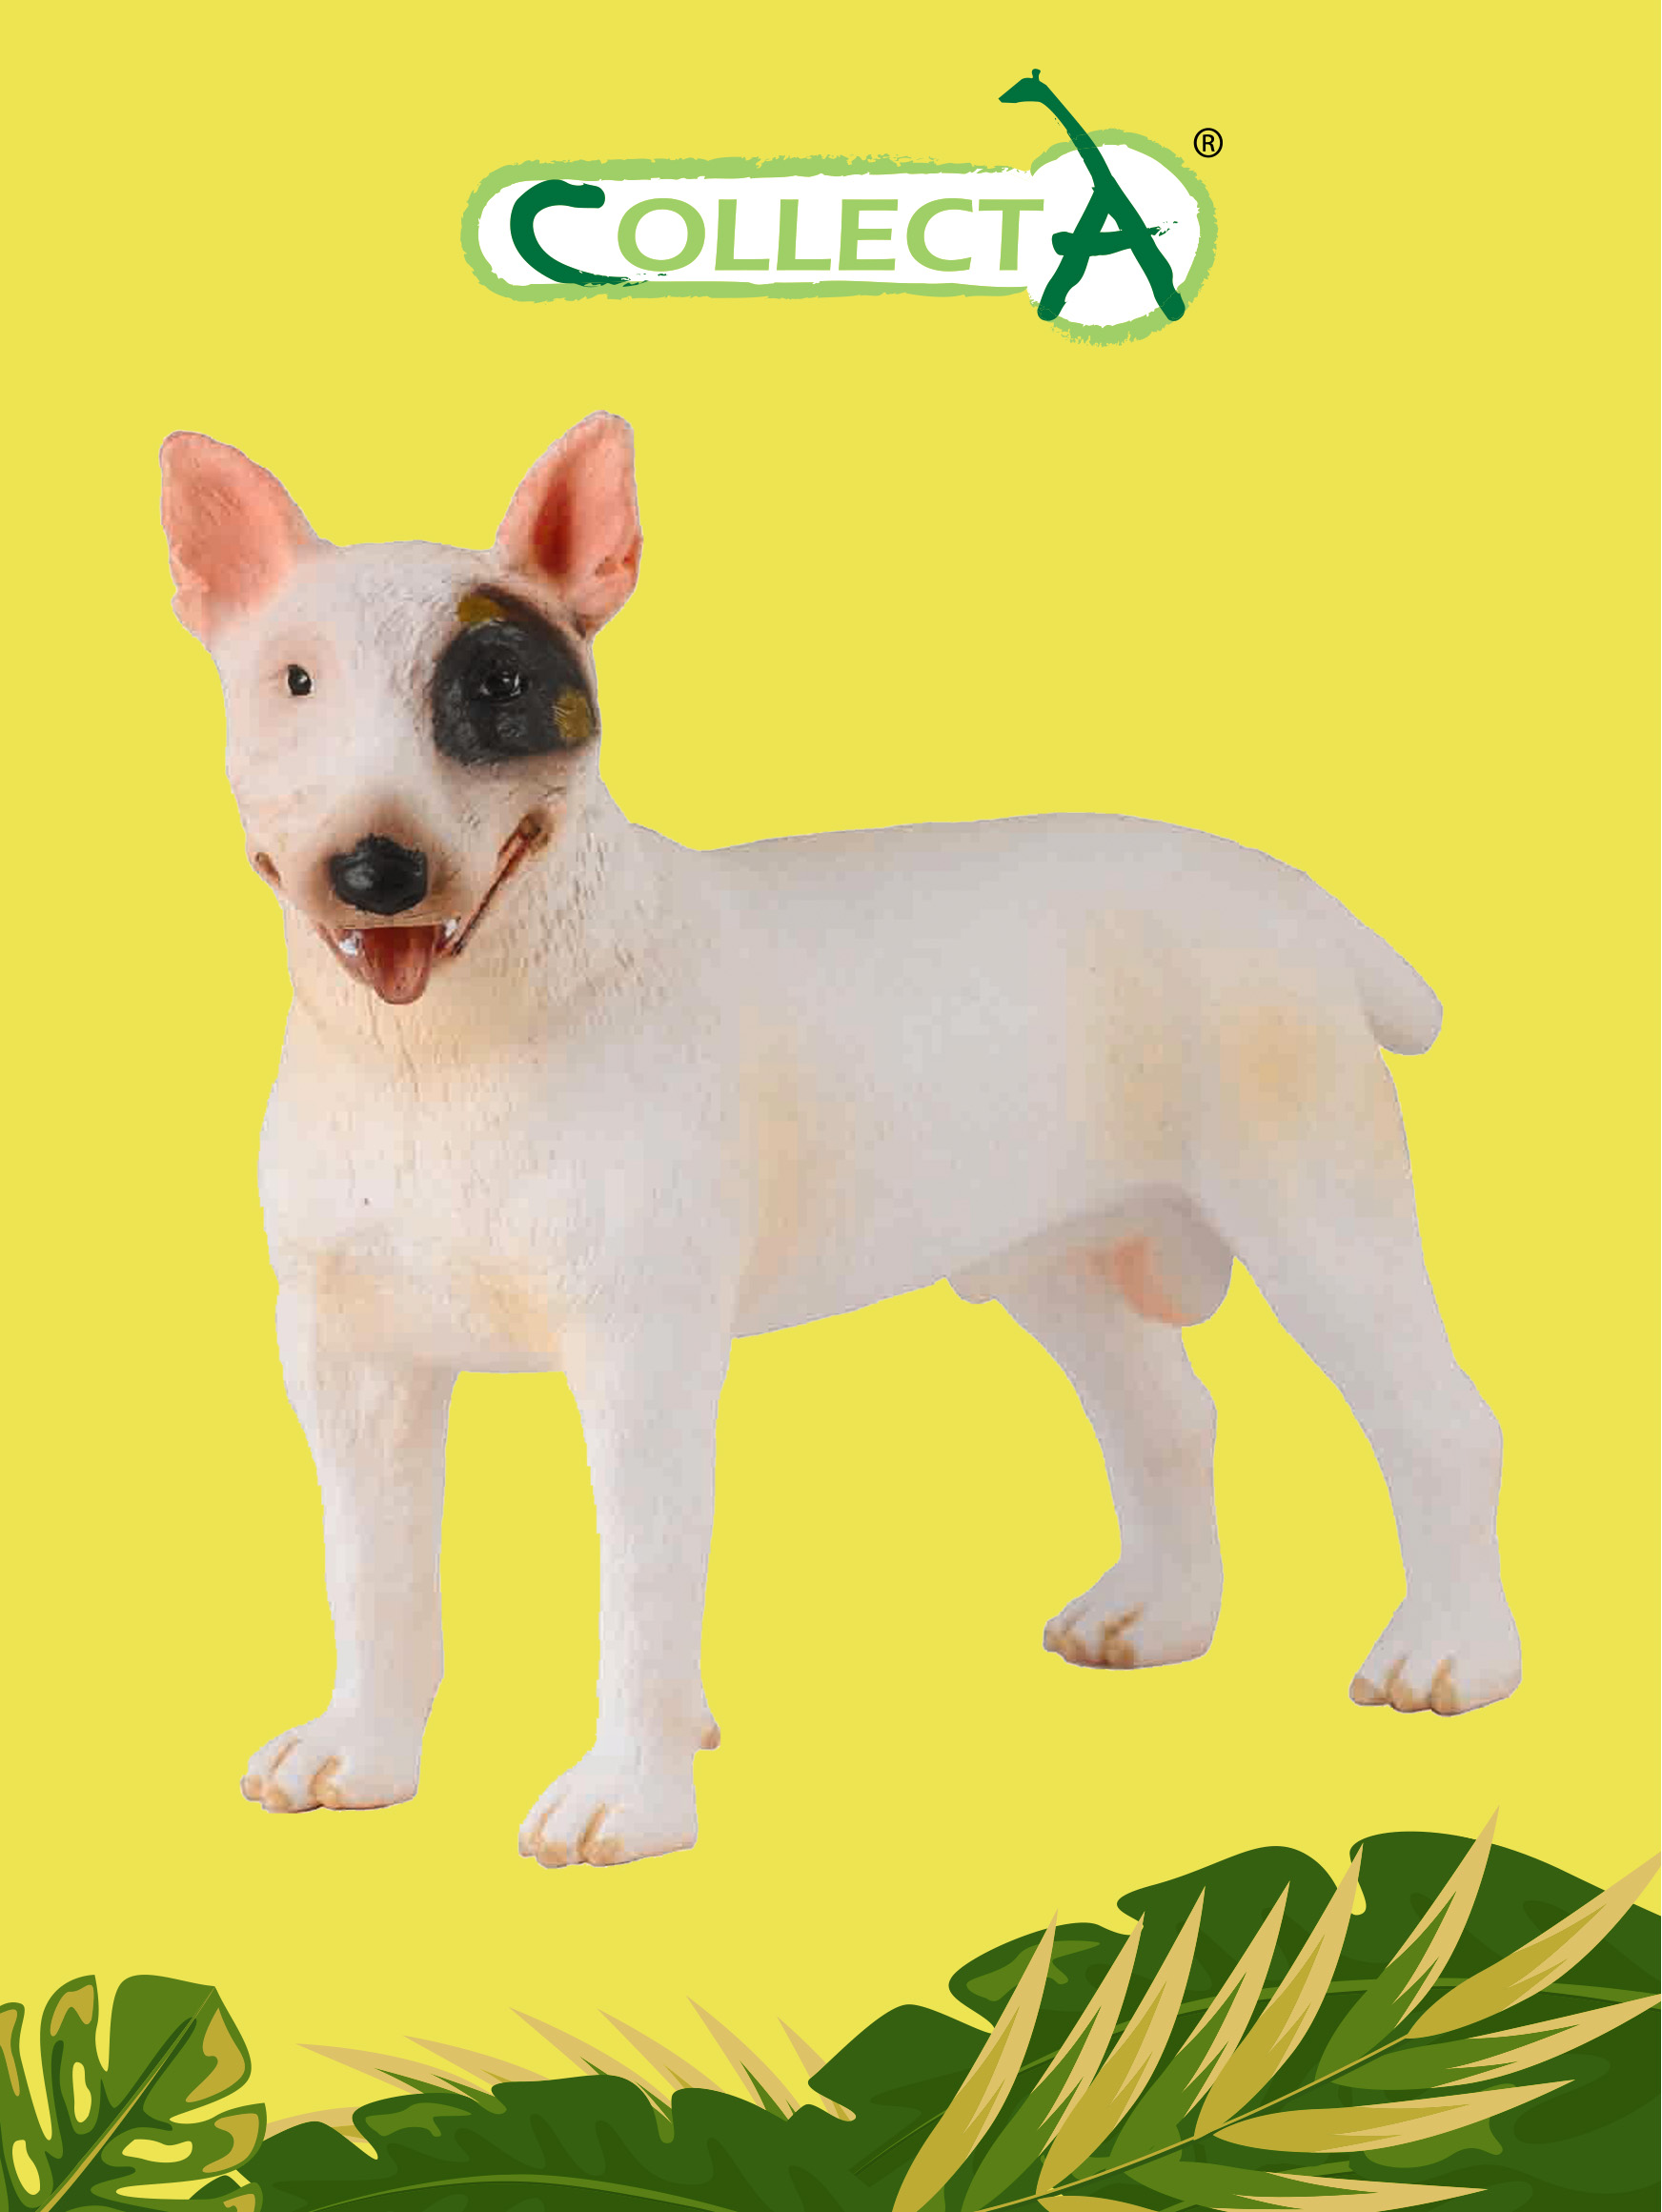 Фигурка Collecta животного Собака Бультерьер - Кобель фигурка животного собака ши тцу collecta